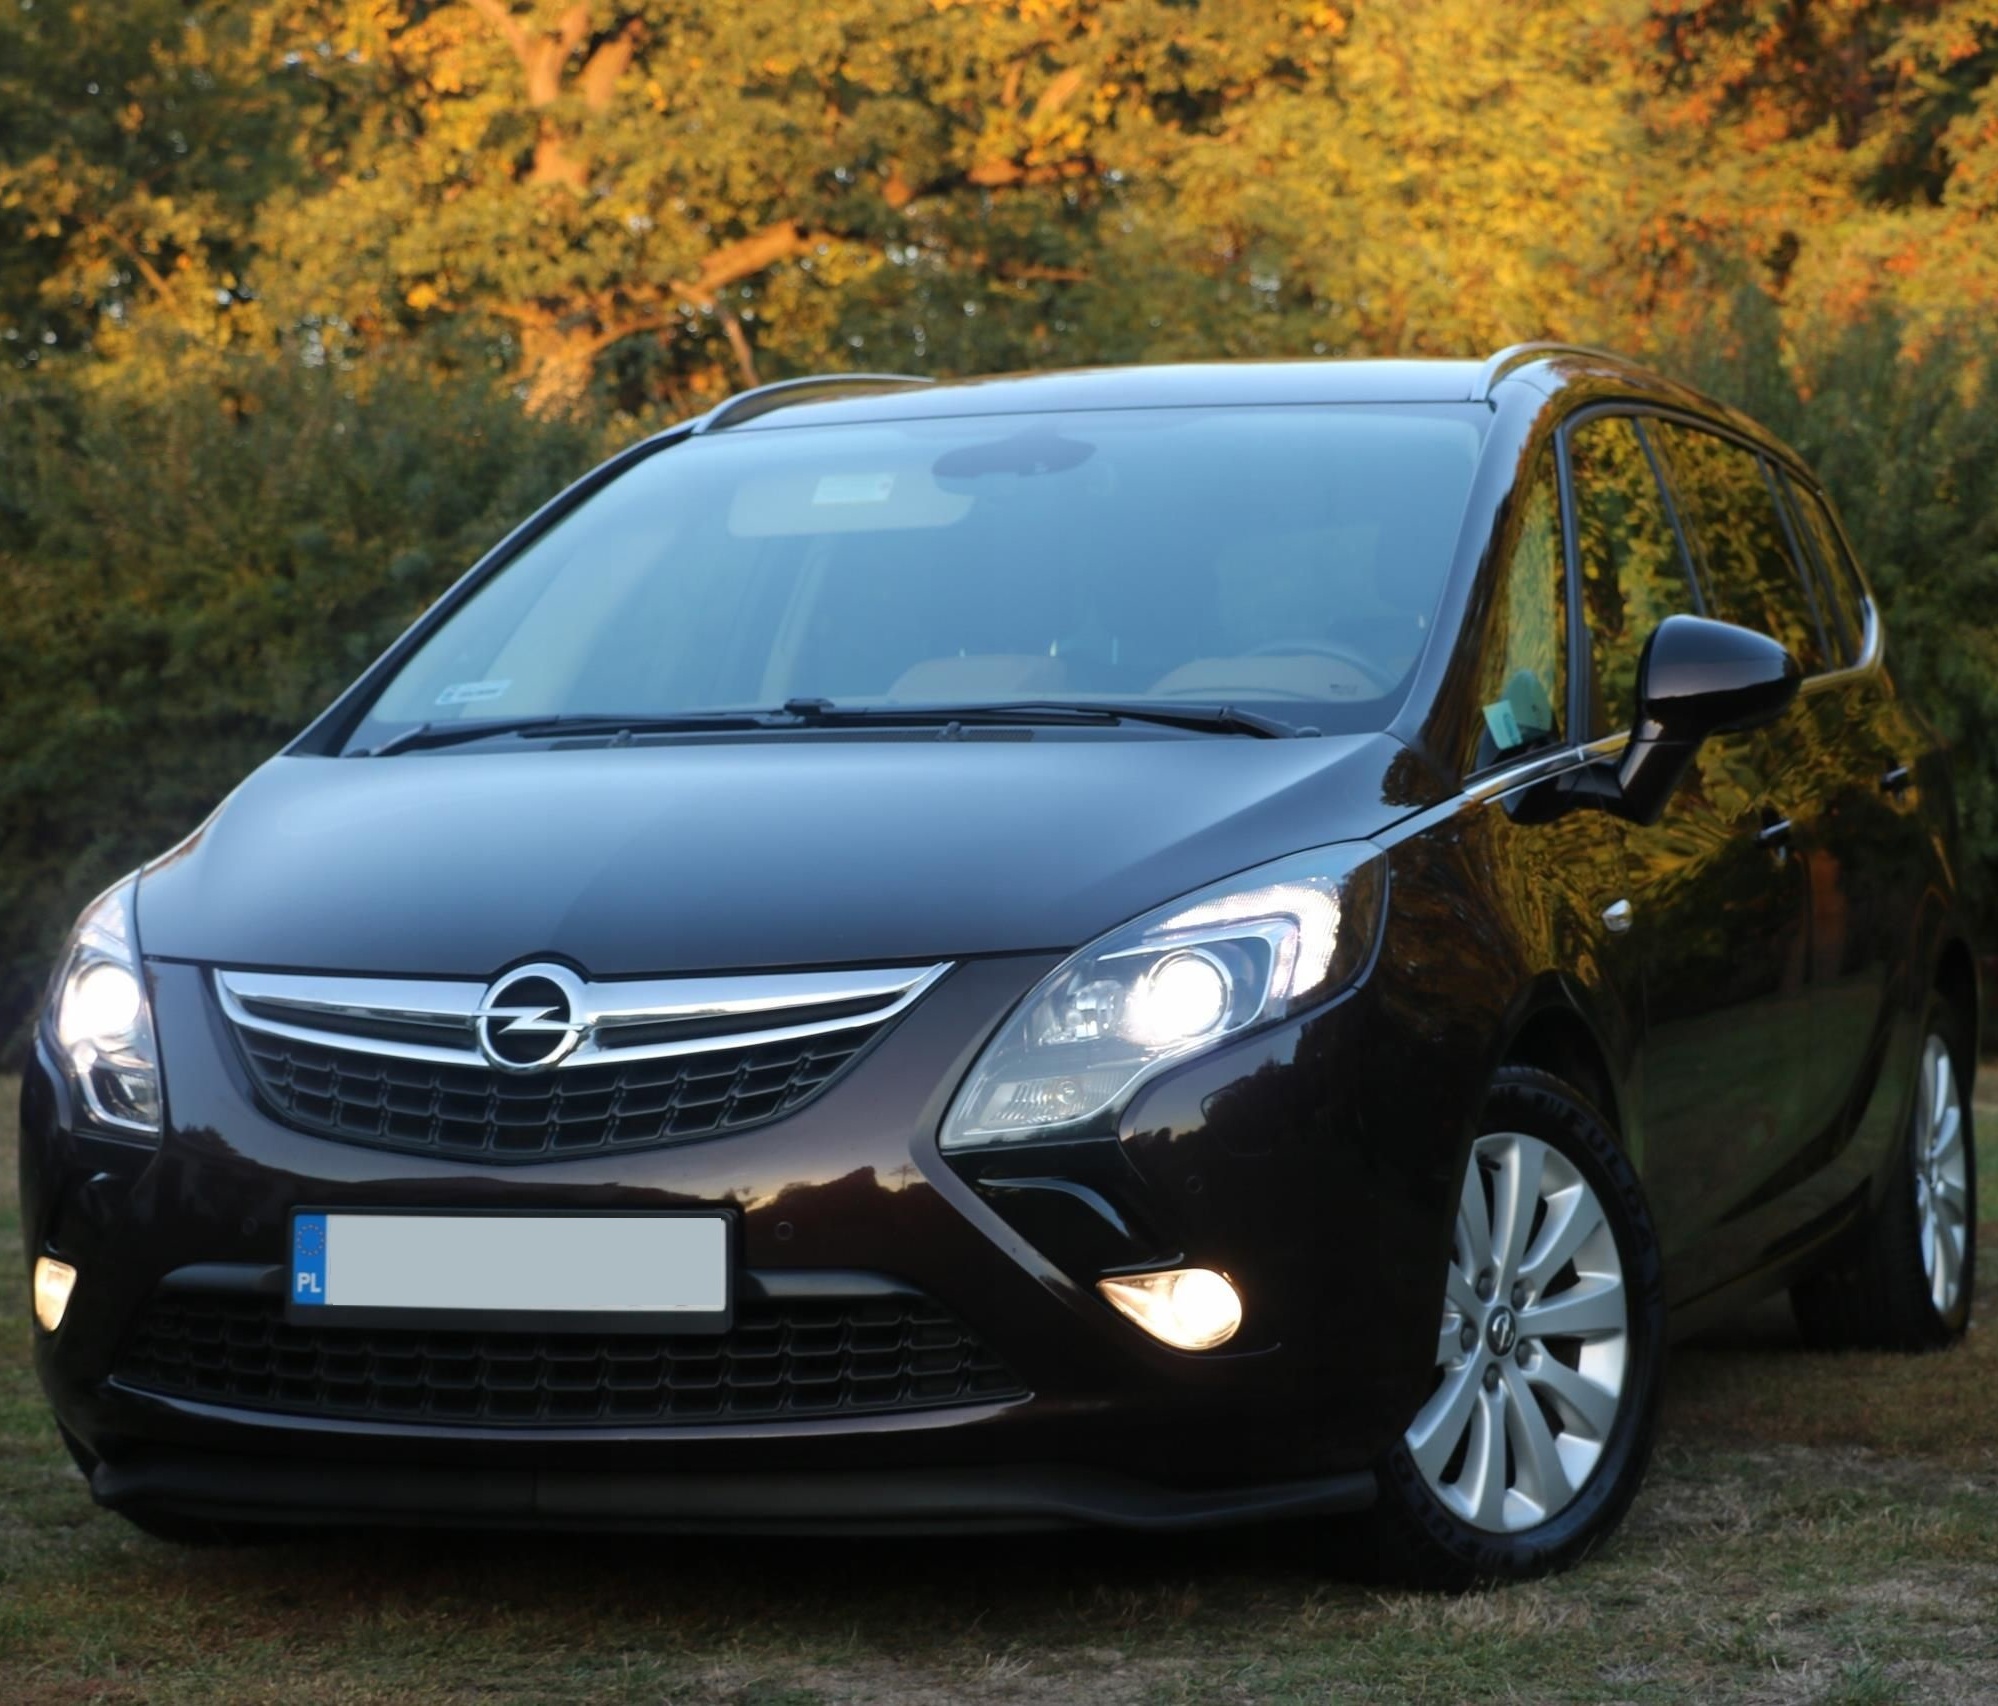 Opelregeneracja reflektorów